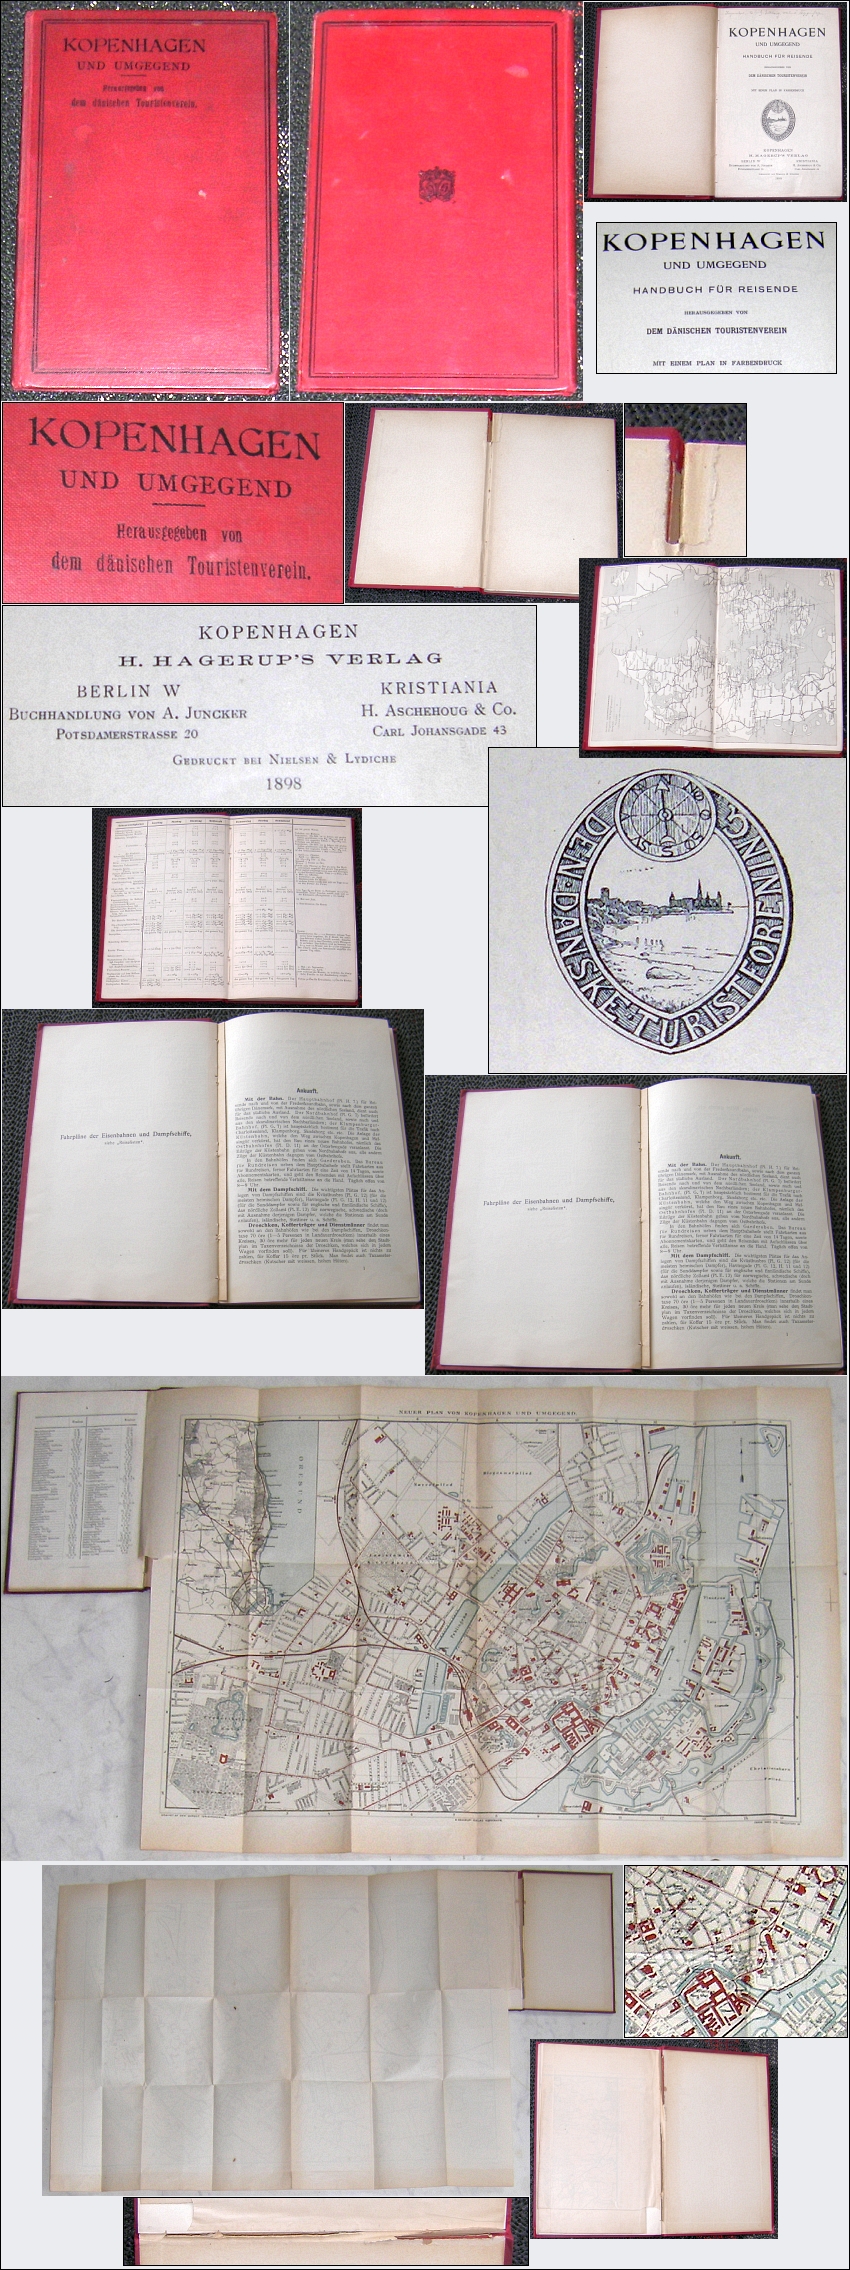 Handbuch fr Reisende: KOPENHAGEN und Umgegend 1898; mit Klappkarte - 20,00 Eur